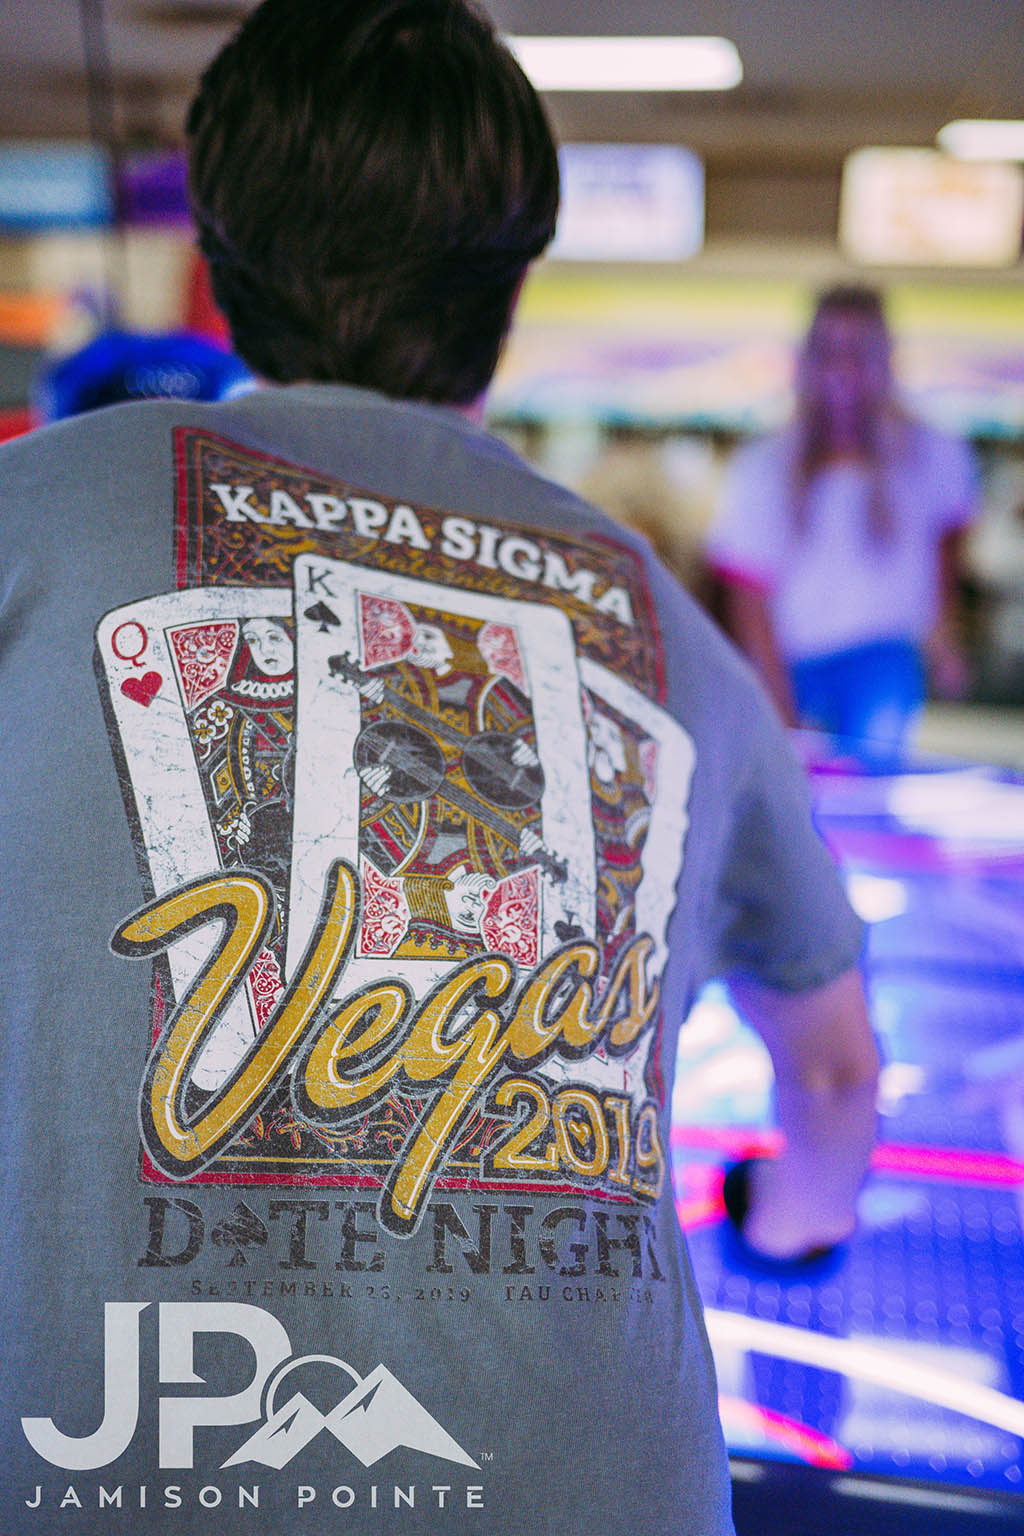 Kappa Sigma Vegas Date Night Tee